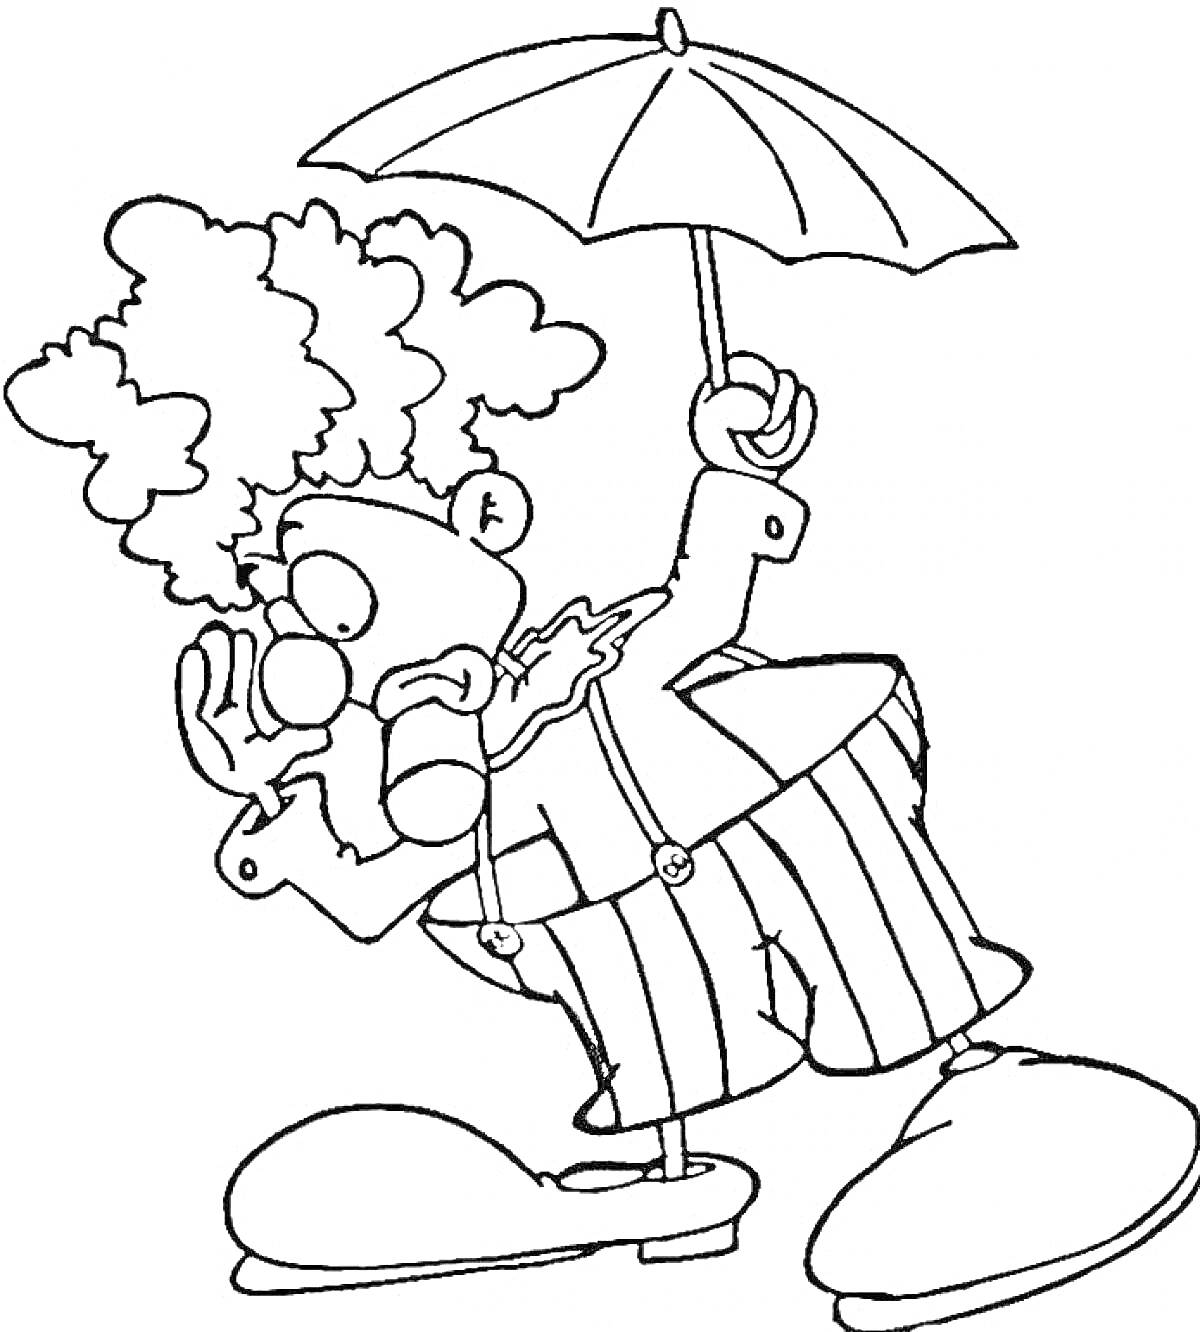 Клоун с зонтом в полосатых брюках и больших ботинках